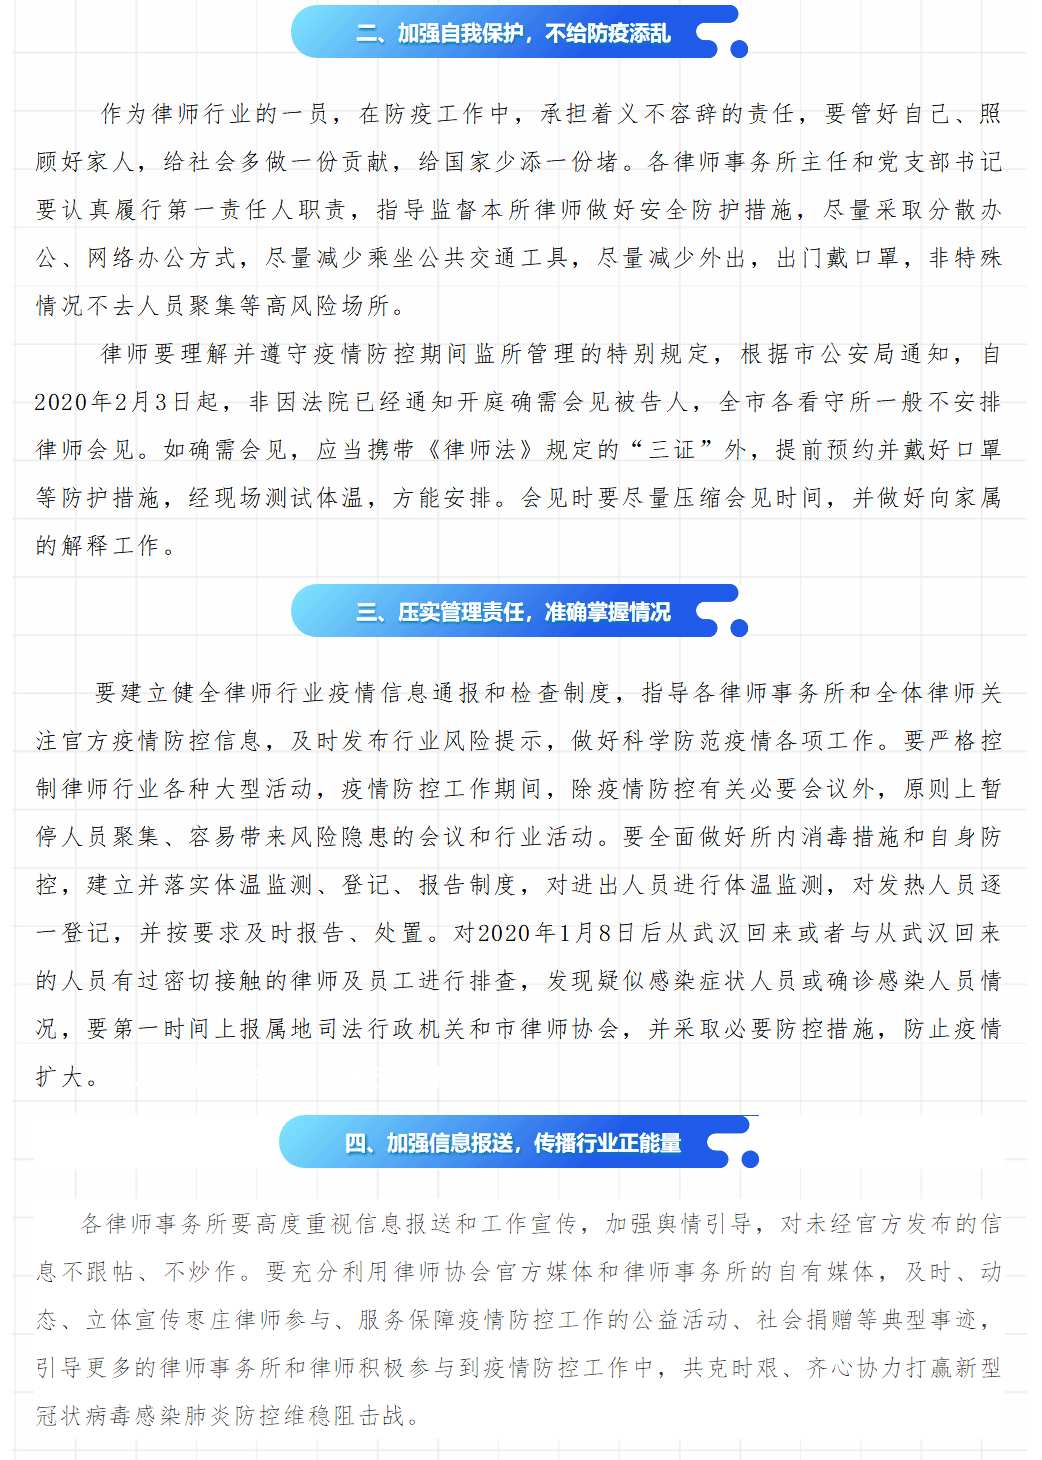 【重要通知】枣庄市律师协会关于进一步加强全市律师行业疫情防控工作的通知2019年12月28日_05.gif